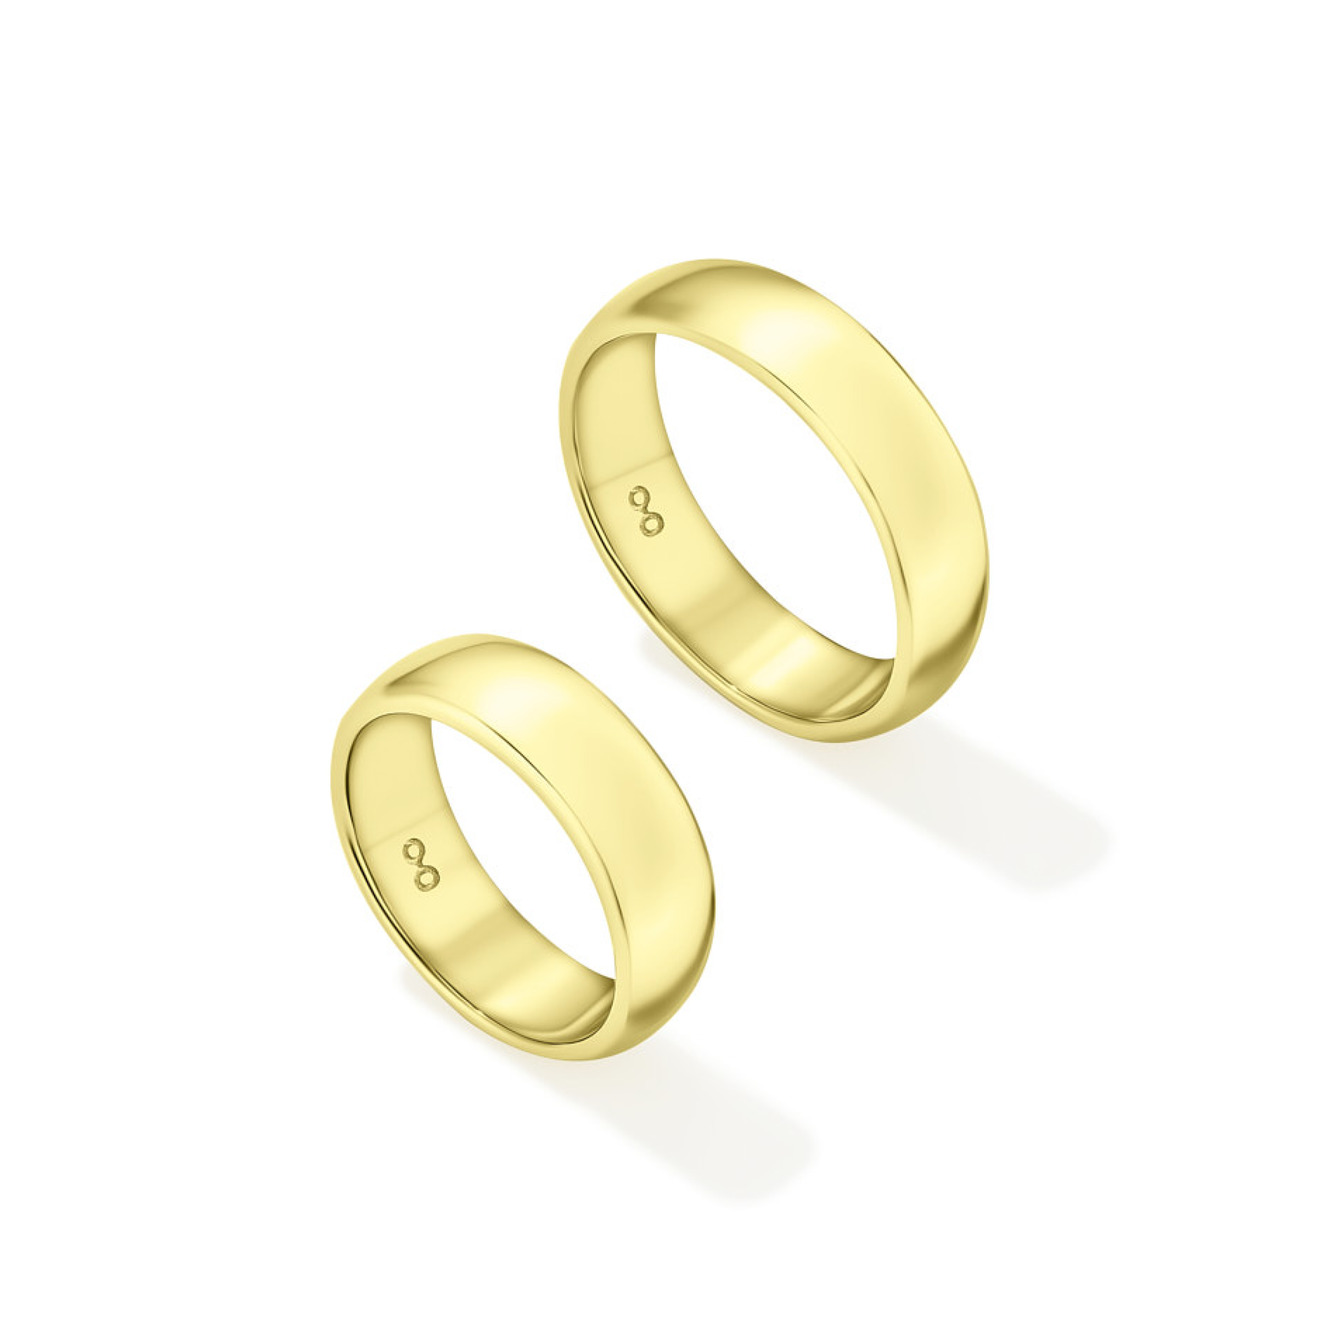 Avgvst Фламандское среднее кольцо из лимонного золота avgvst кольцо арка среднее из лимонного золота